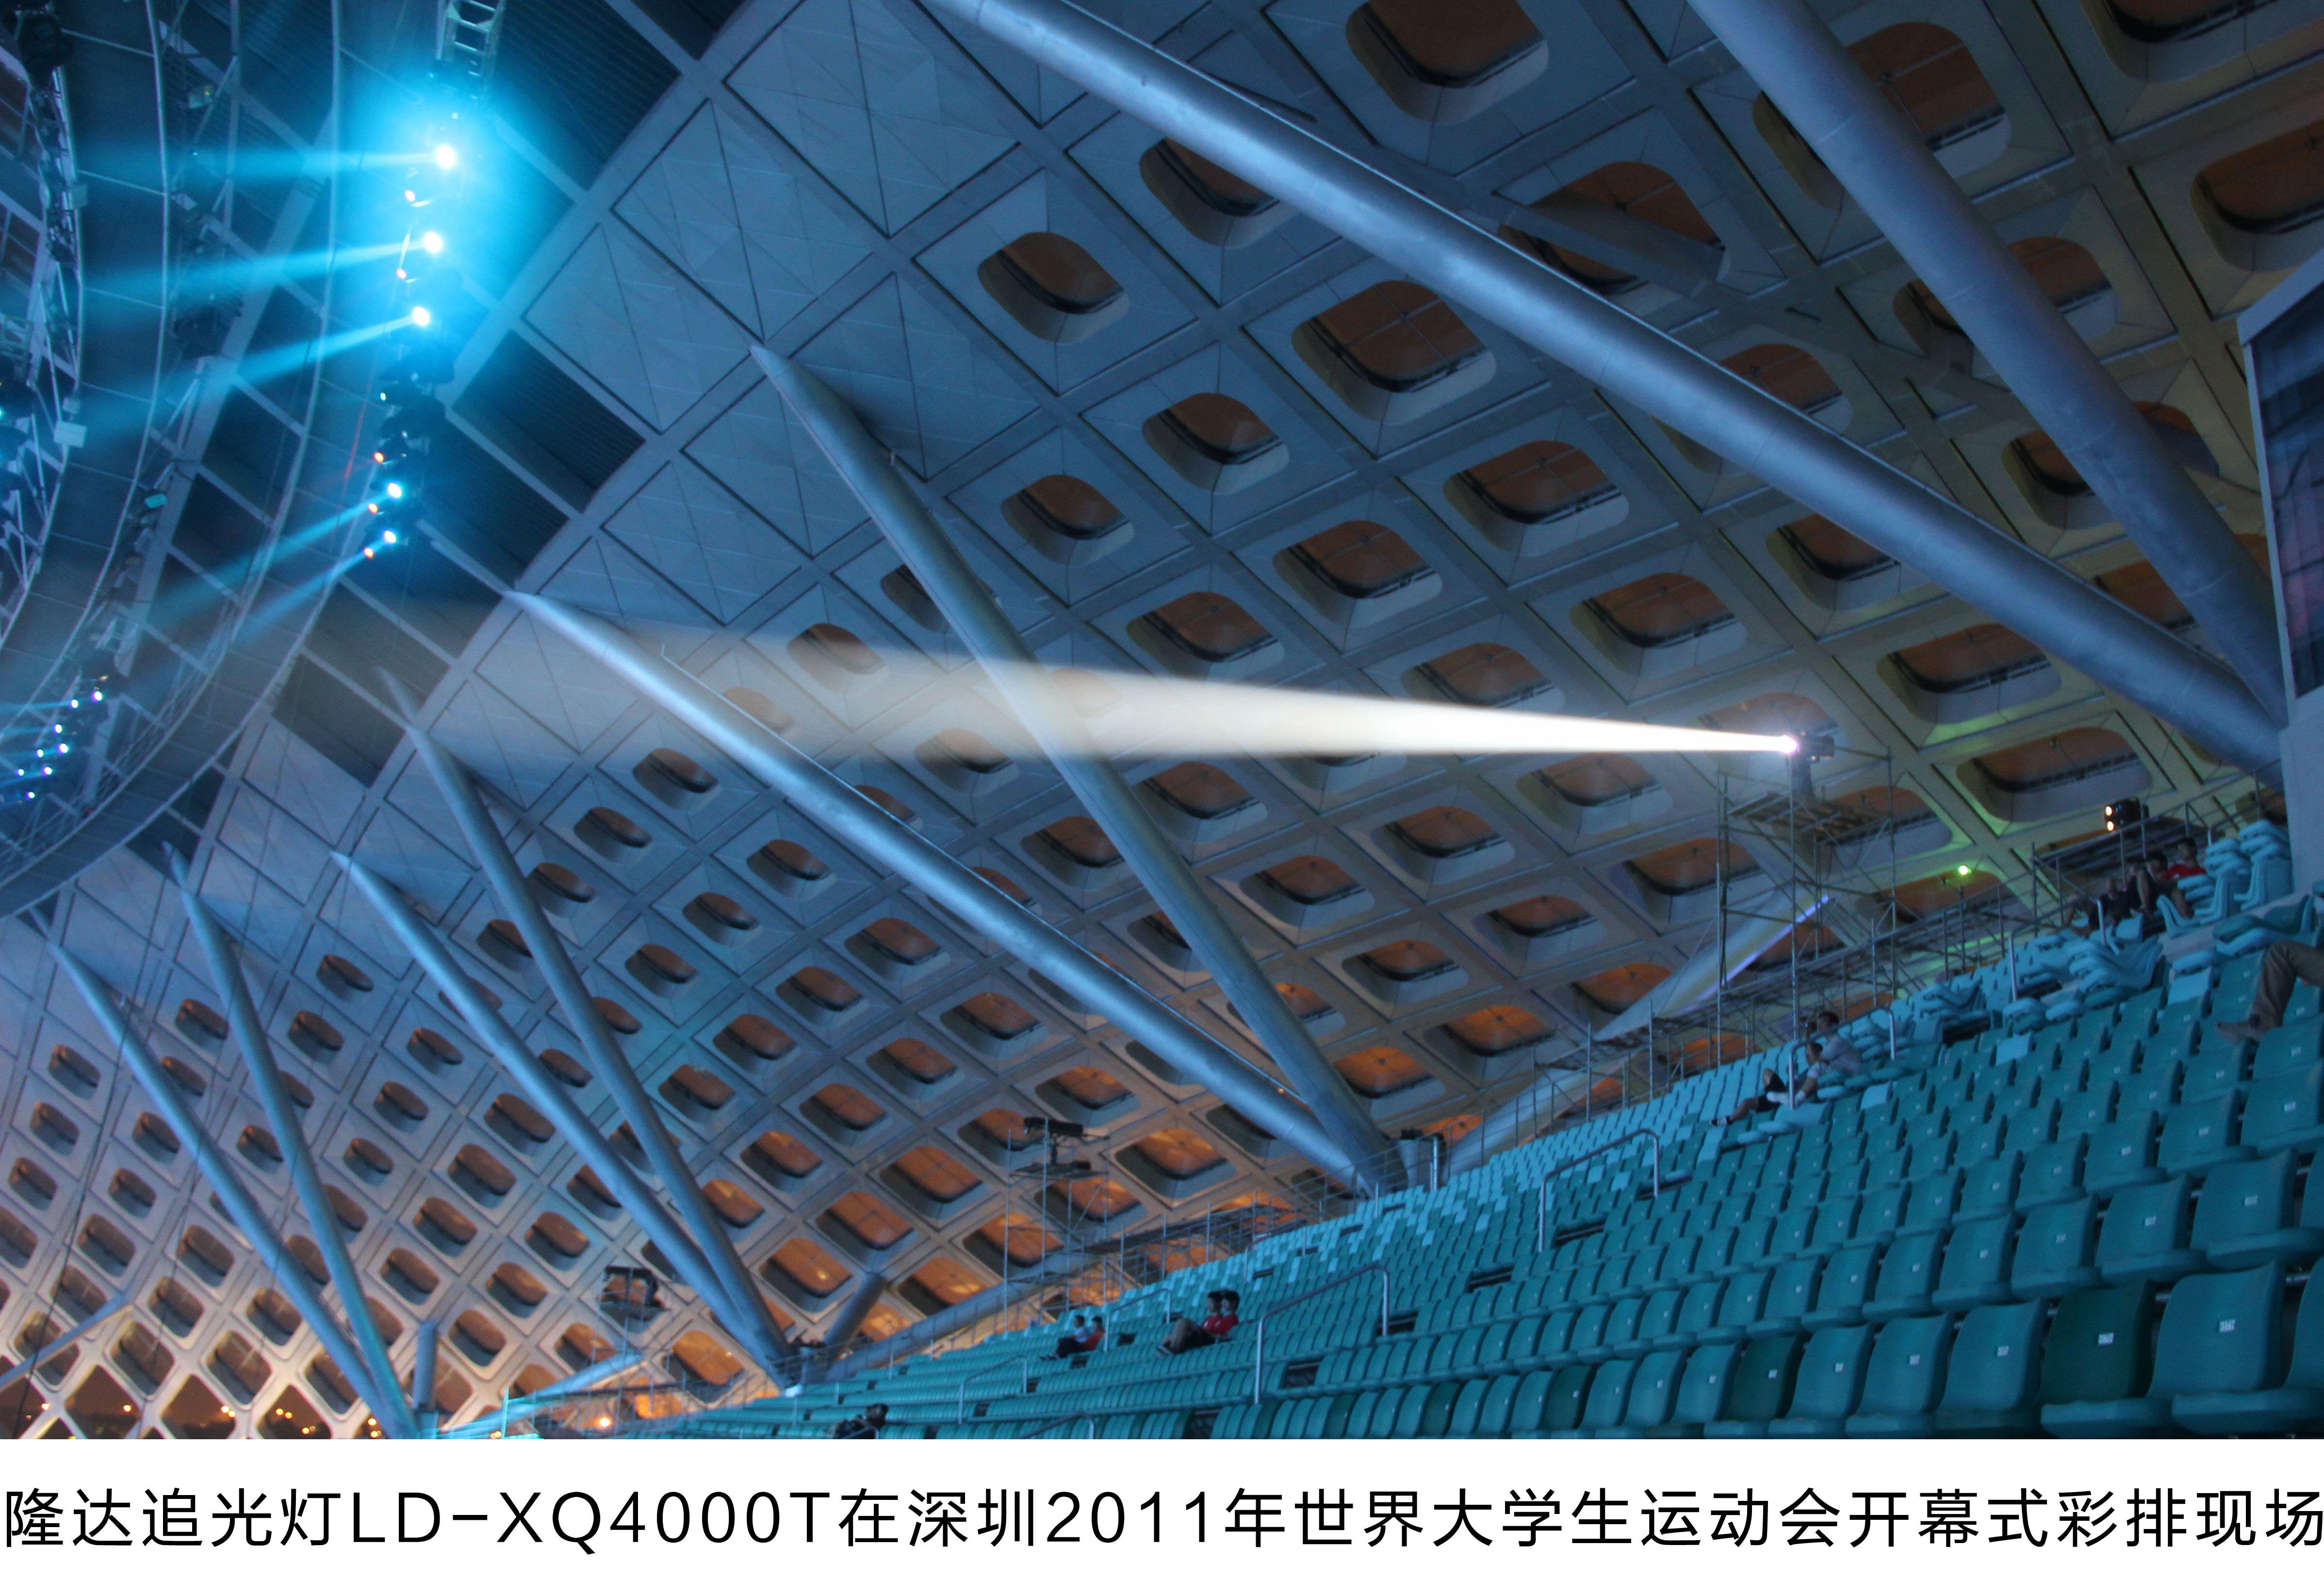 隆达追光灯LD-XQ4000T在深圳2011年世界大学生运动会开幕式安装现场02拷贝